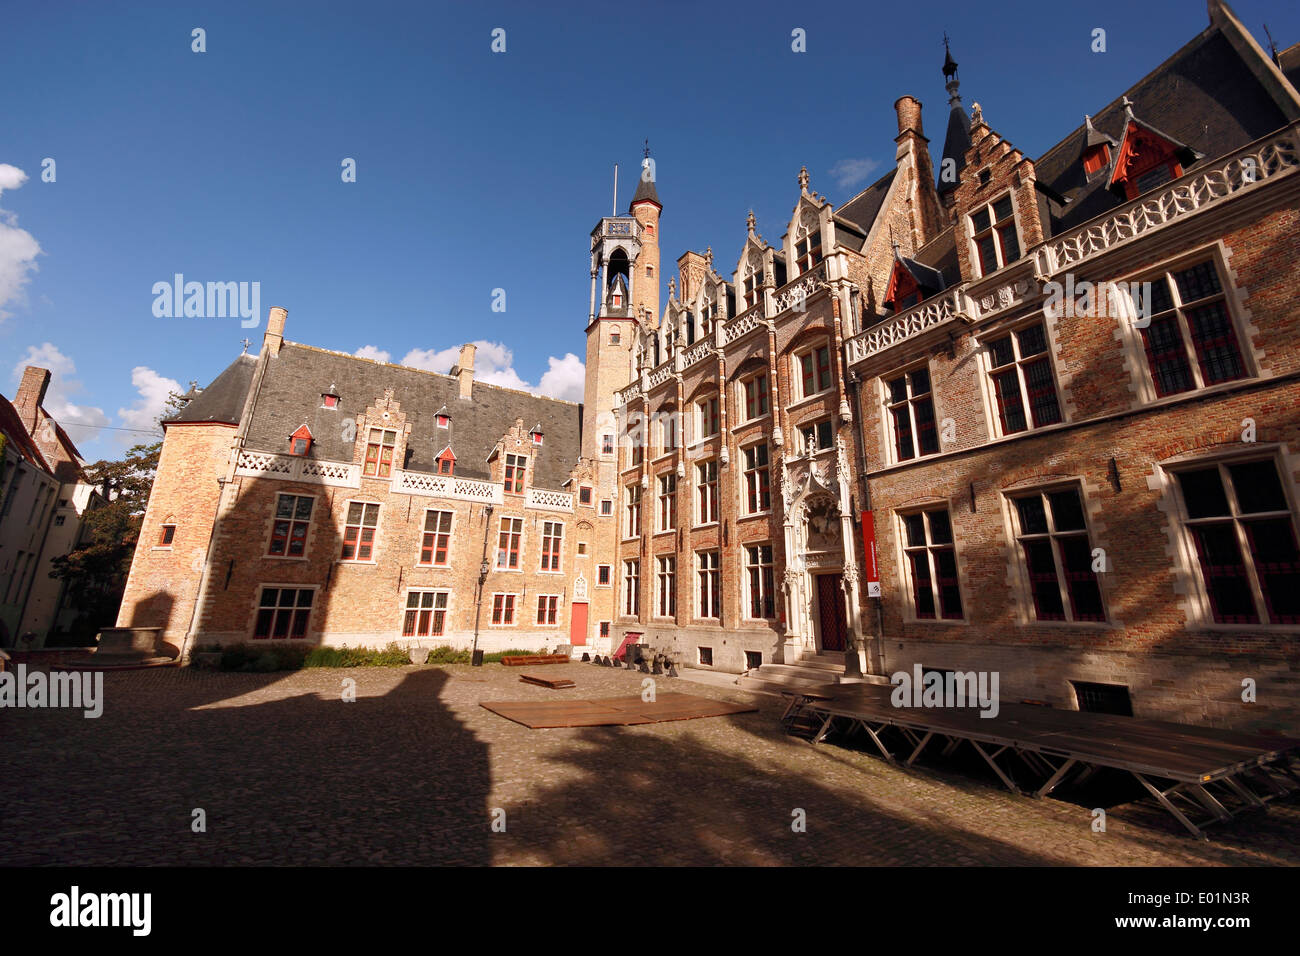 La Gruuthusemuseum et cour intérieure, Bruges, Belgique Banque D'Images